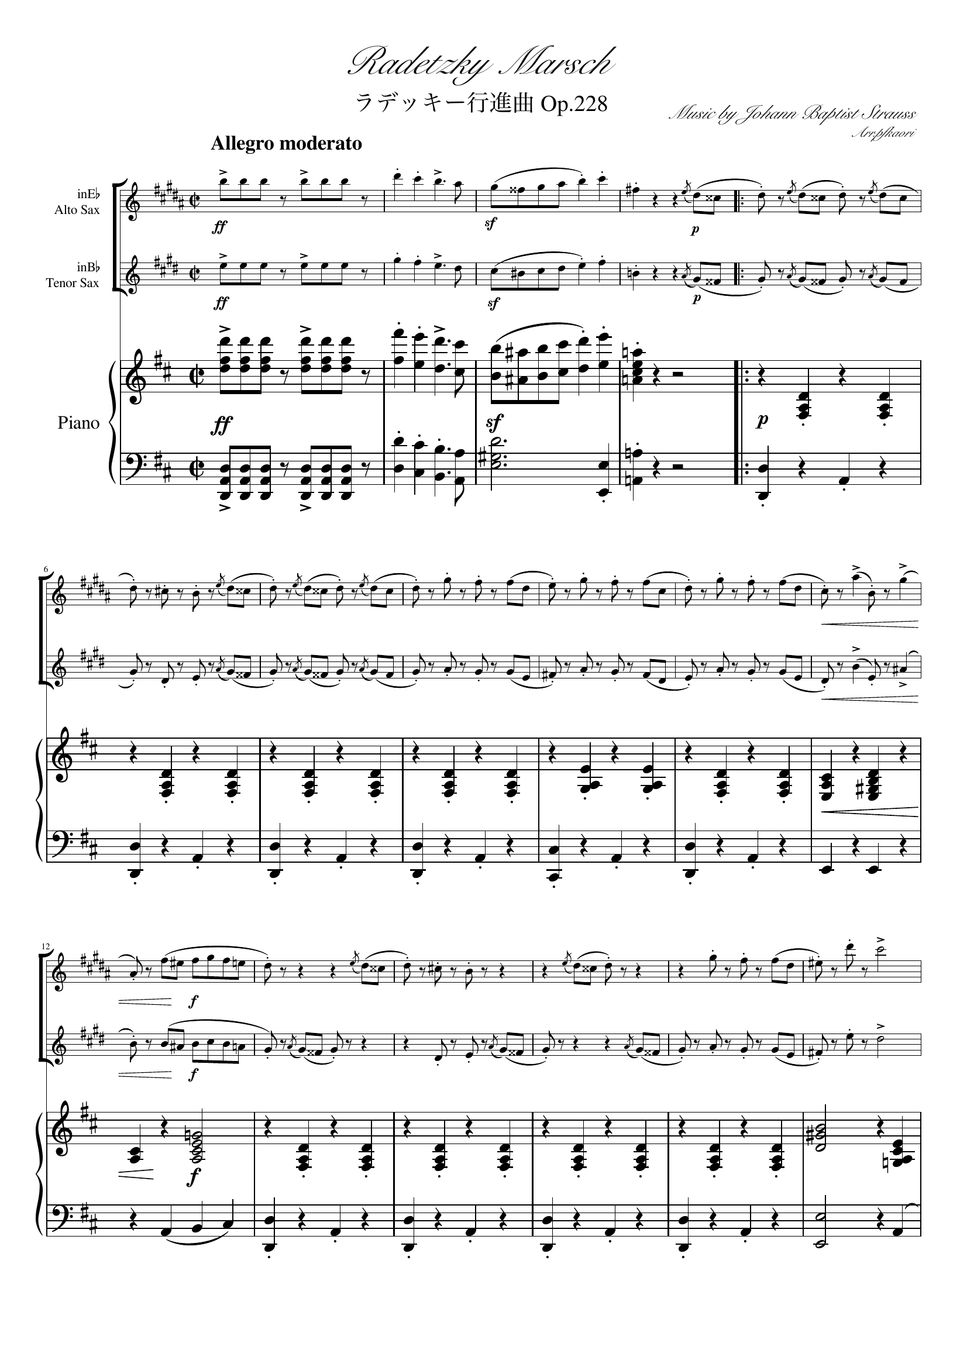 ヨハンシュトラウス1世 - ラデッキー行進曲 (D・ピアノトリオ・アルトサックス&テナートンサック) by pfkaori